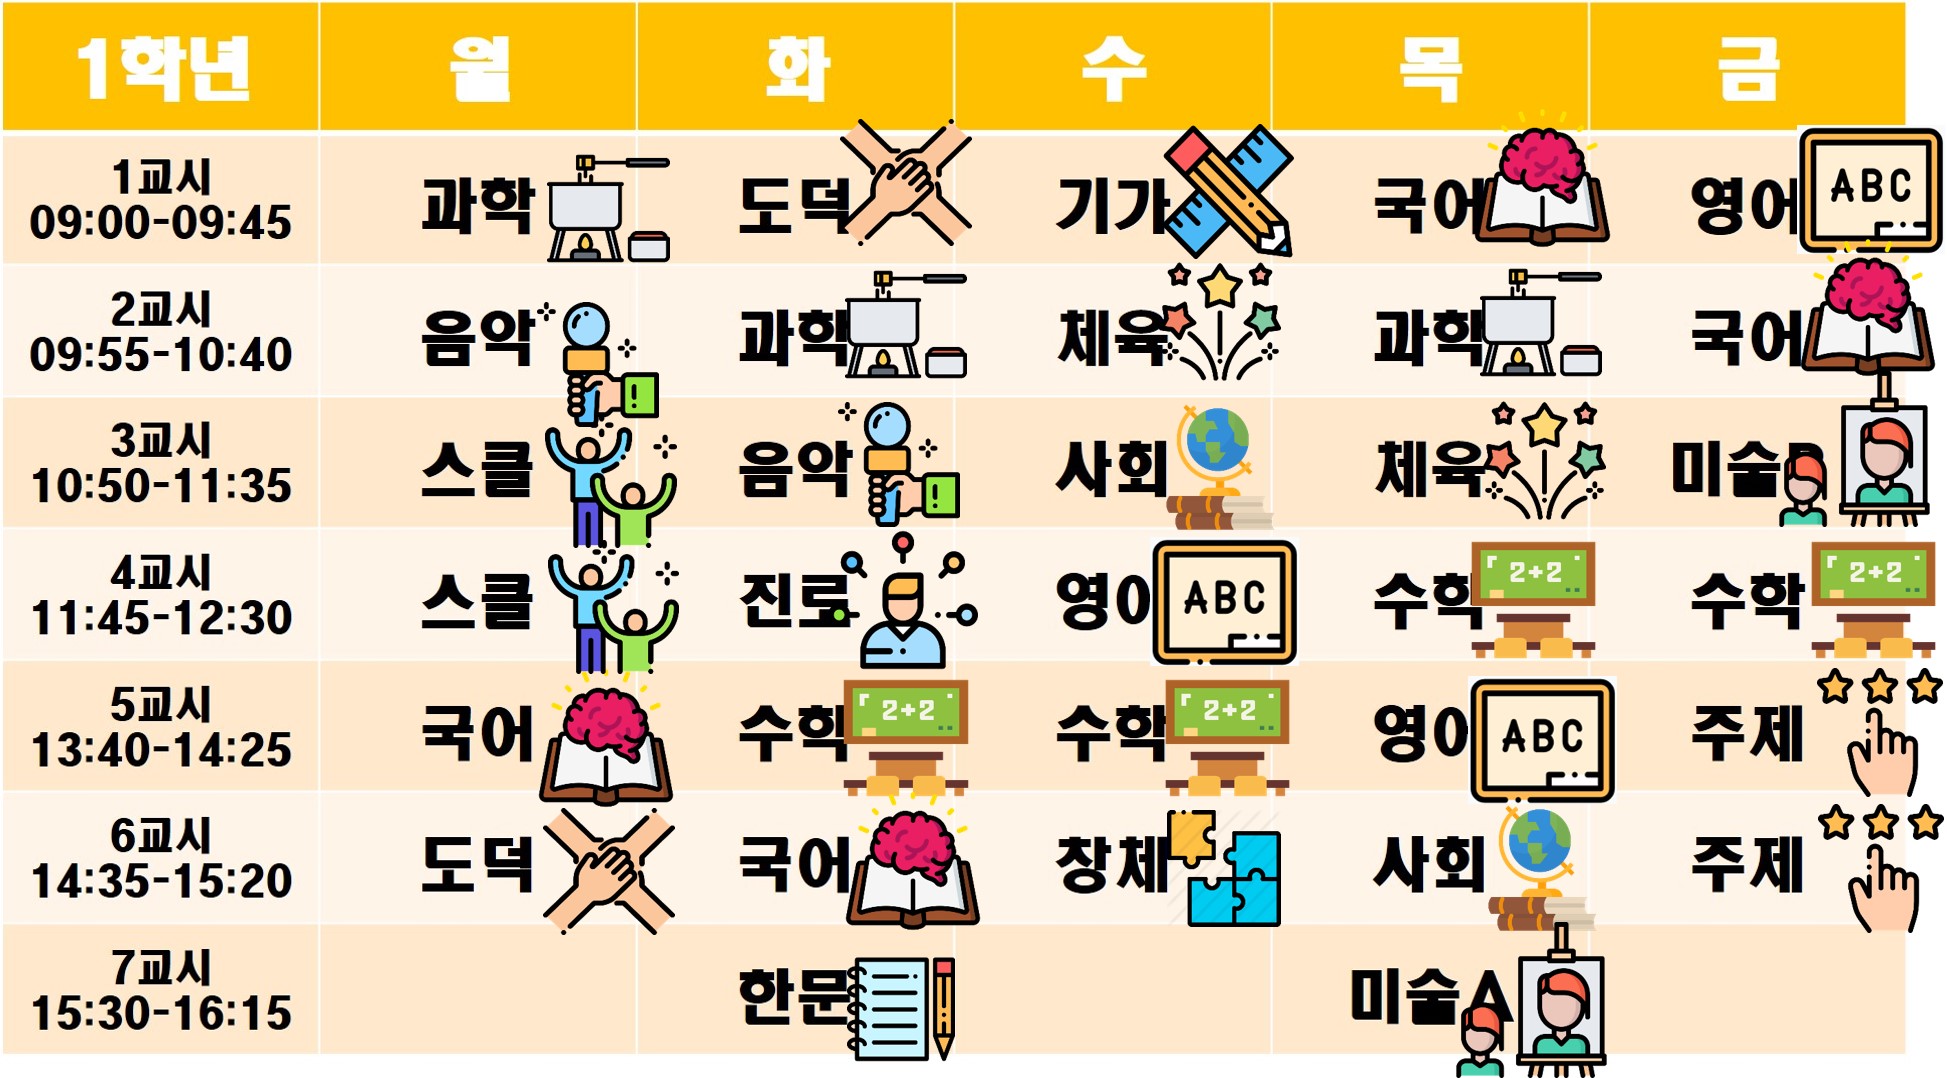 1학년 온라인 시간표(최종).jpg